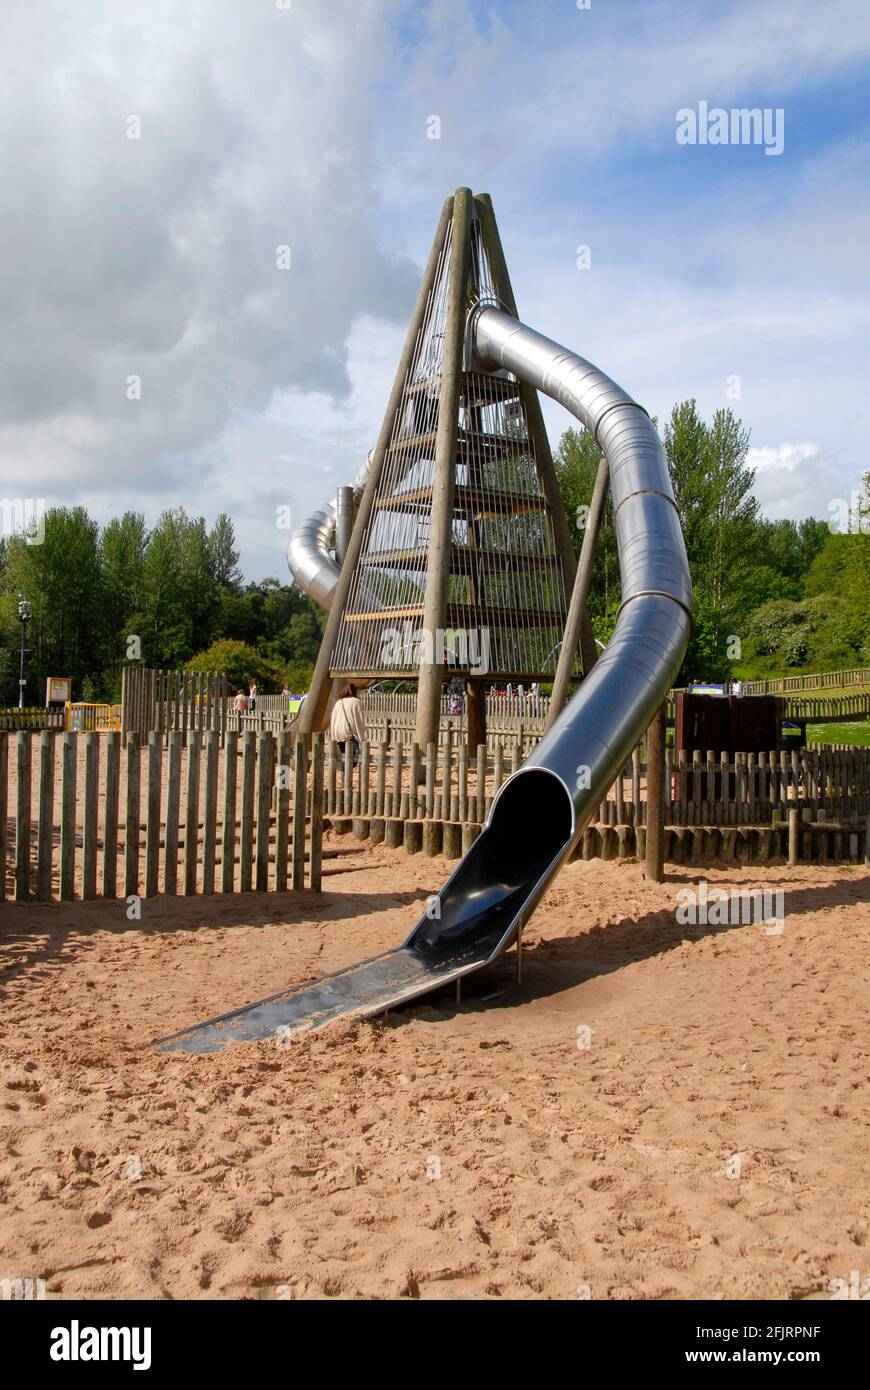 Hohe vierseitige Struktur mit gebogenem, geschlossenen Rohr, das als Kinderrutsche fungiert, Telford Town Park, Shropshire, England Stockfoto